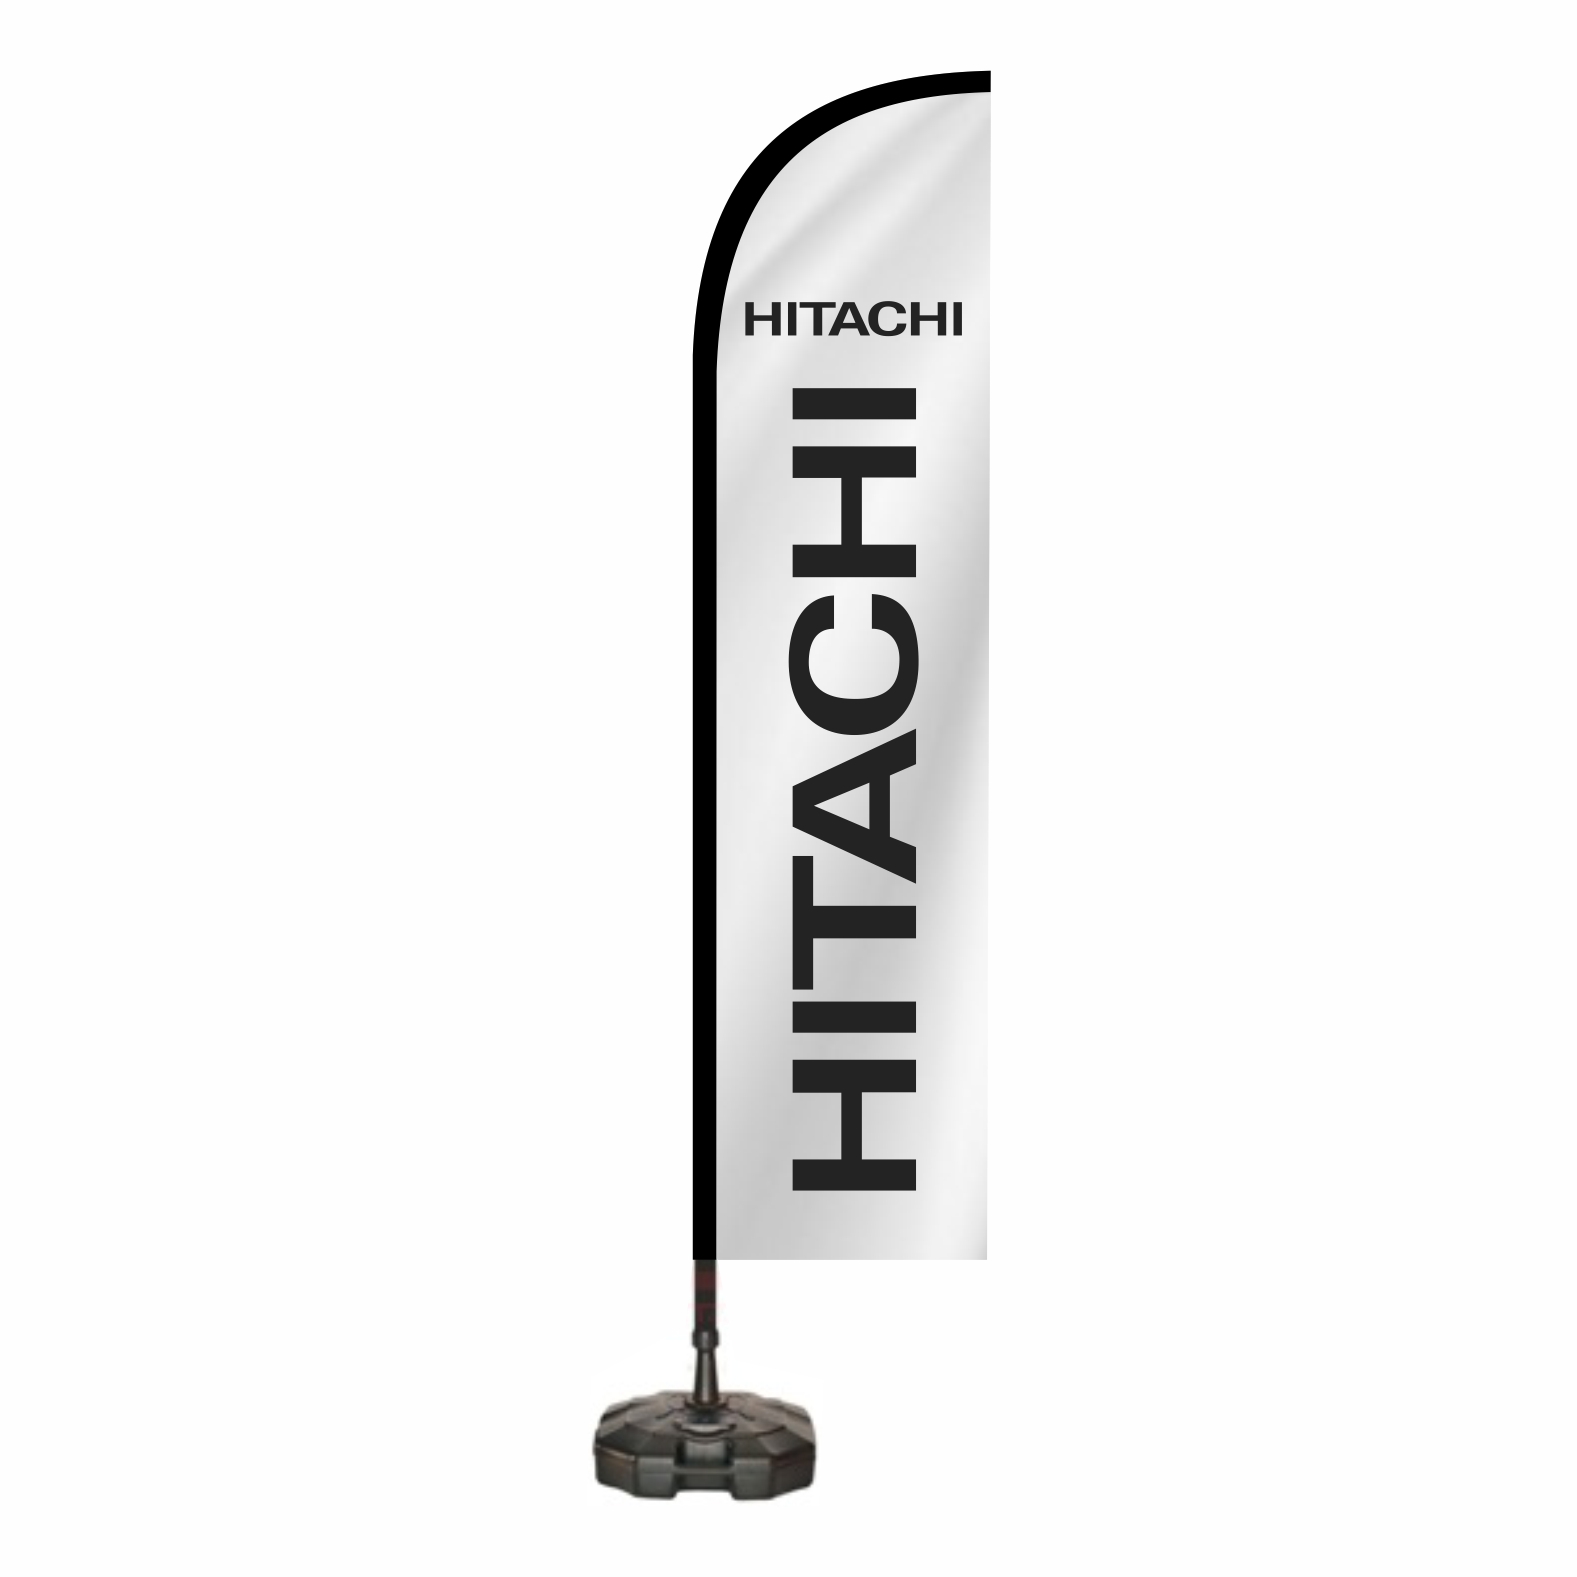 Hitachi Reklam Bayra Yapan Firmalar